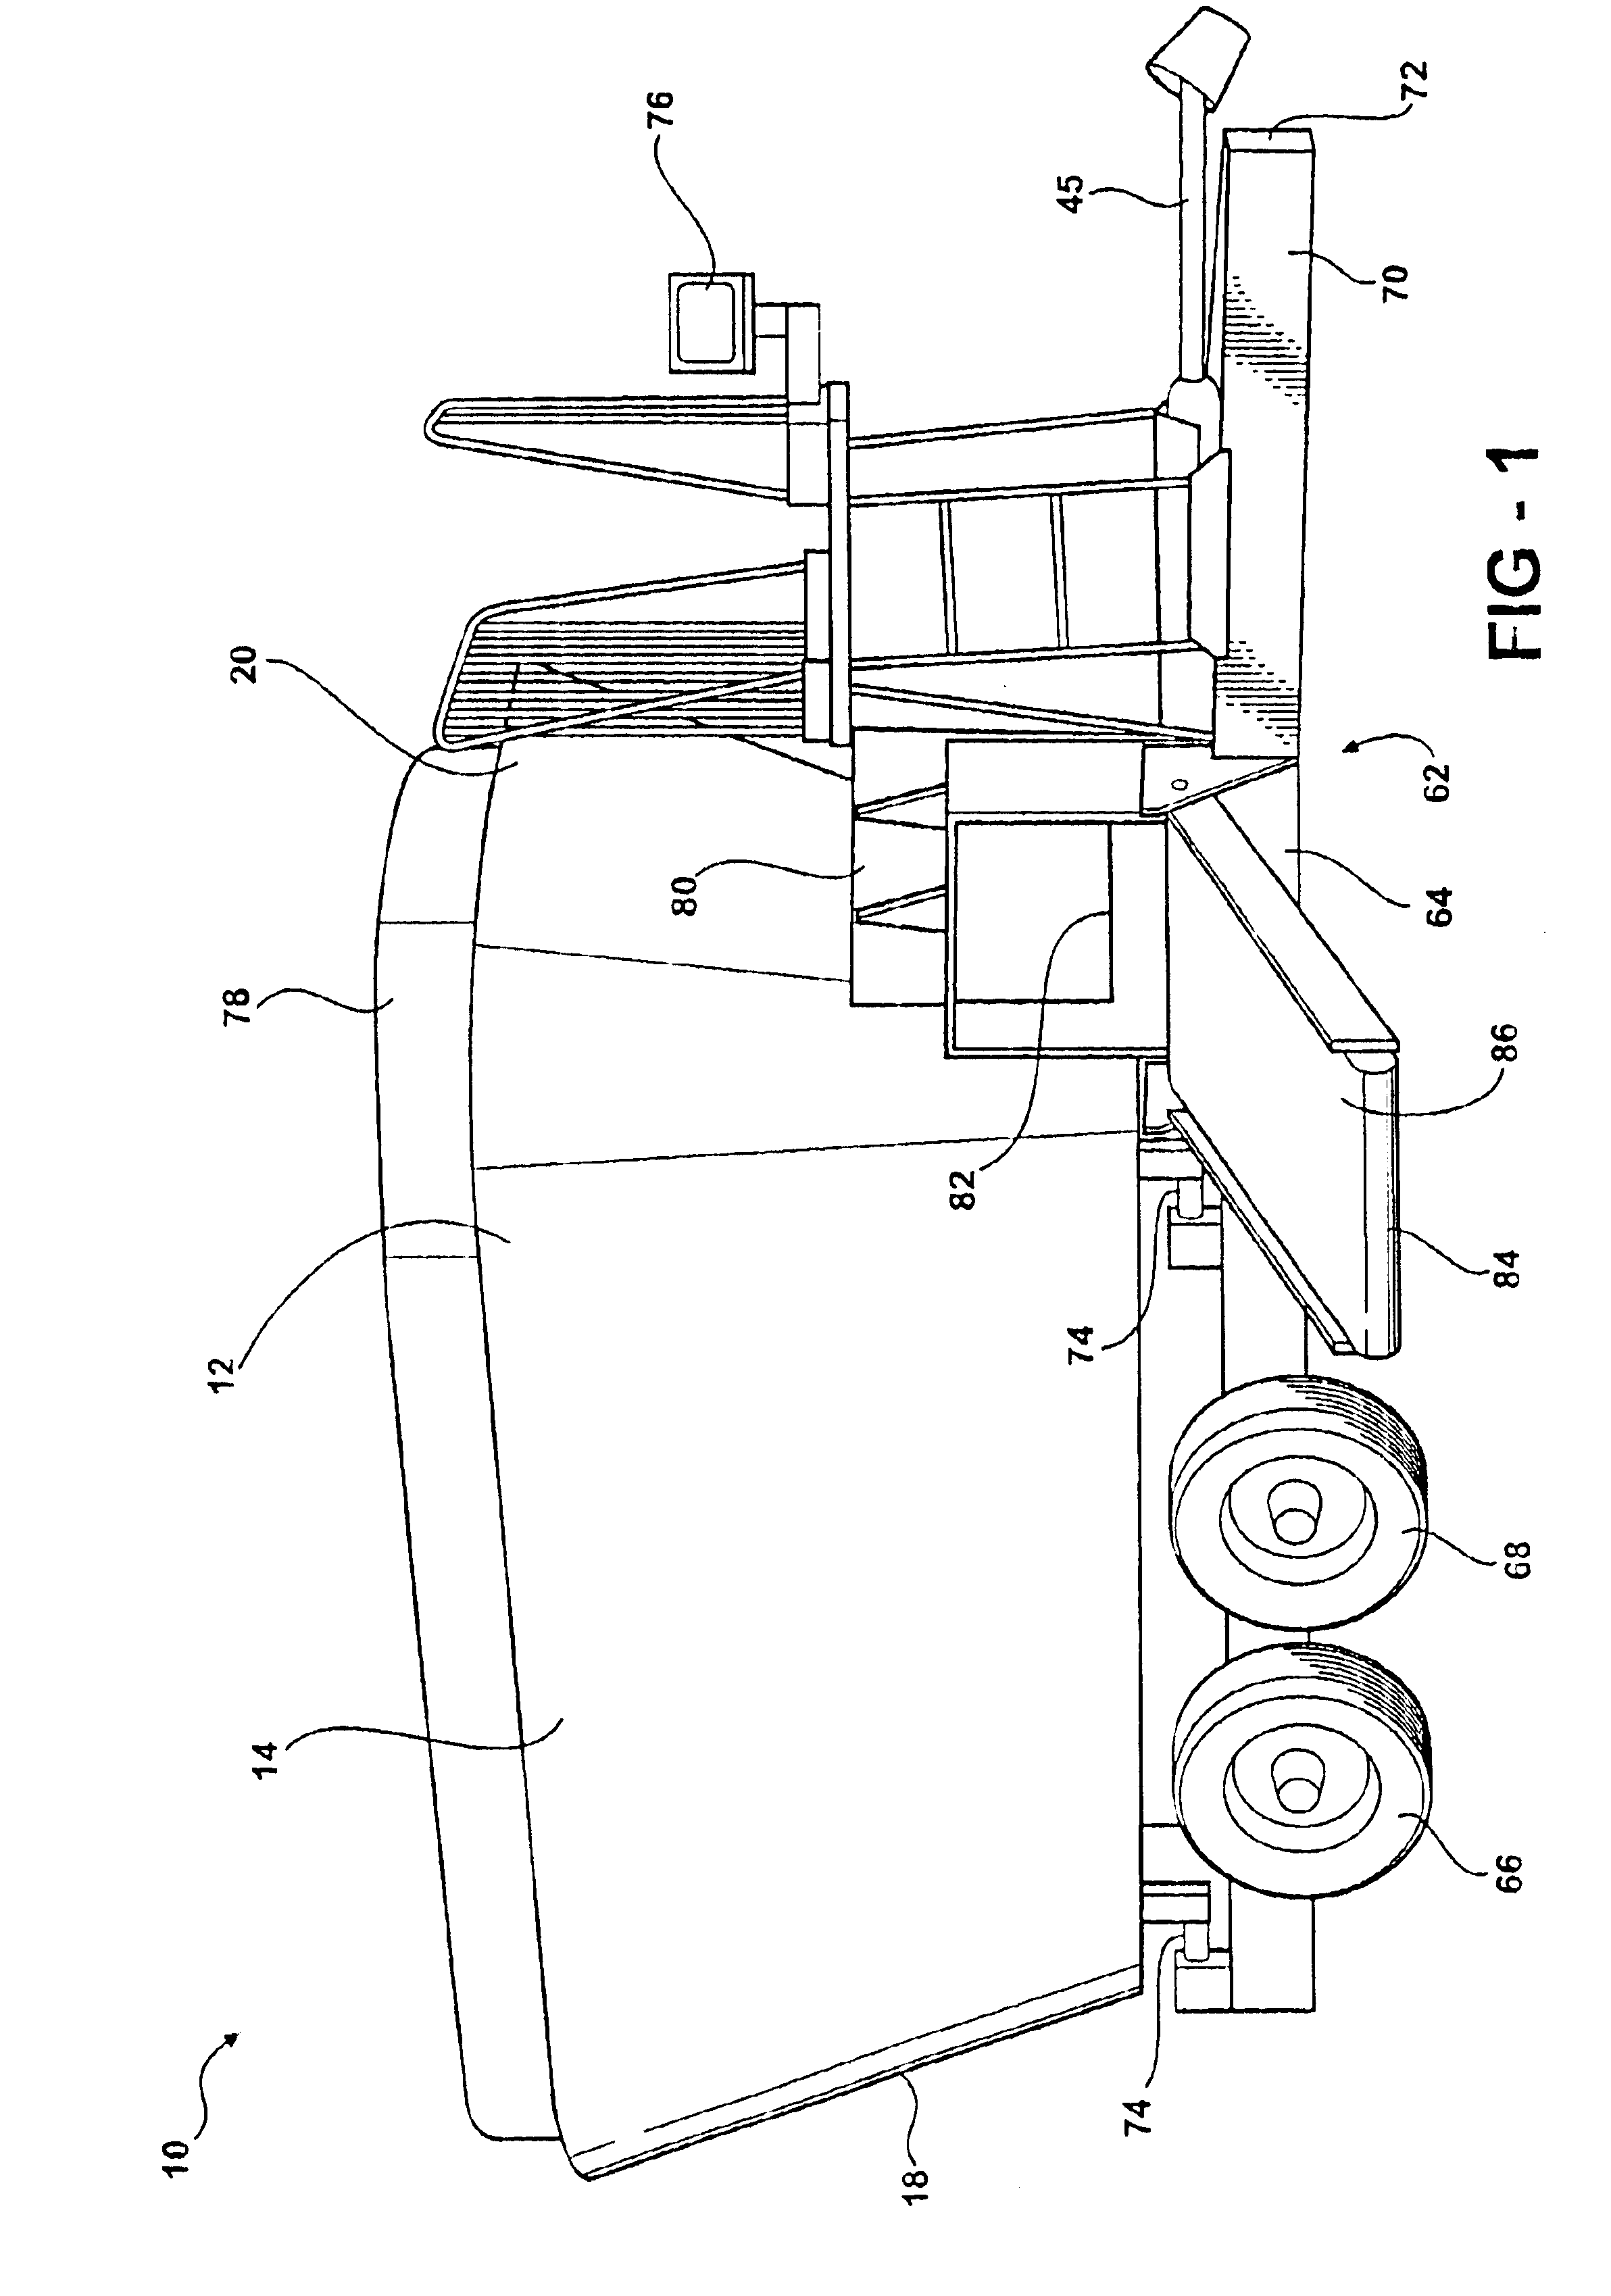 Multiple vertical auger cutter mixer